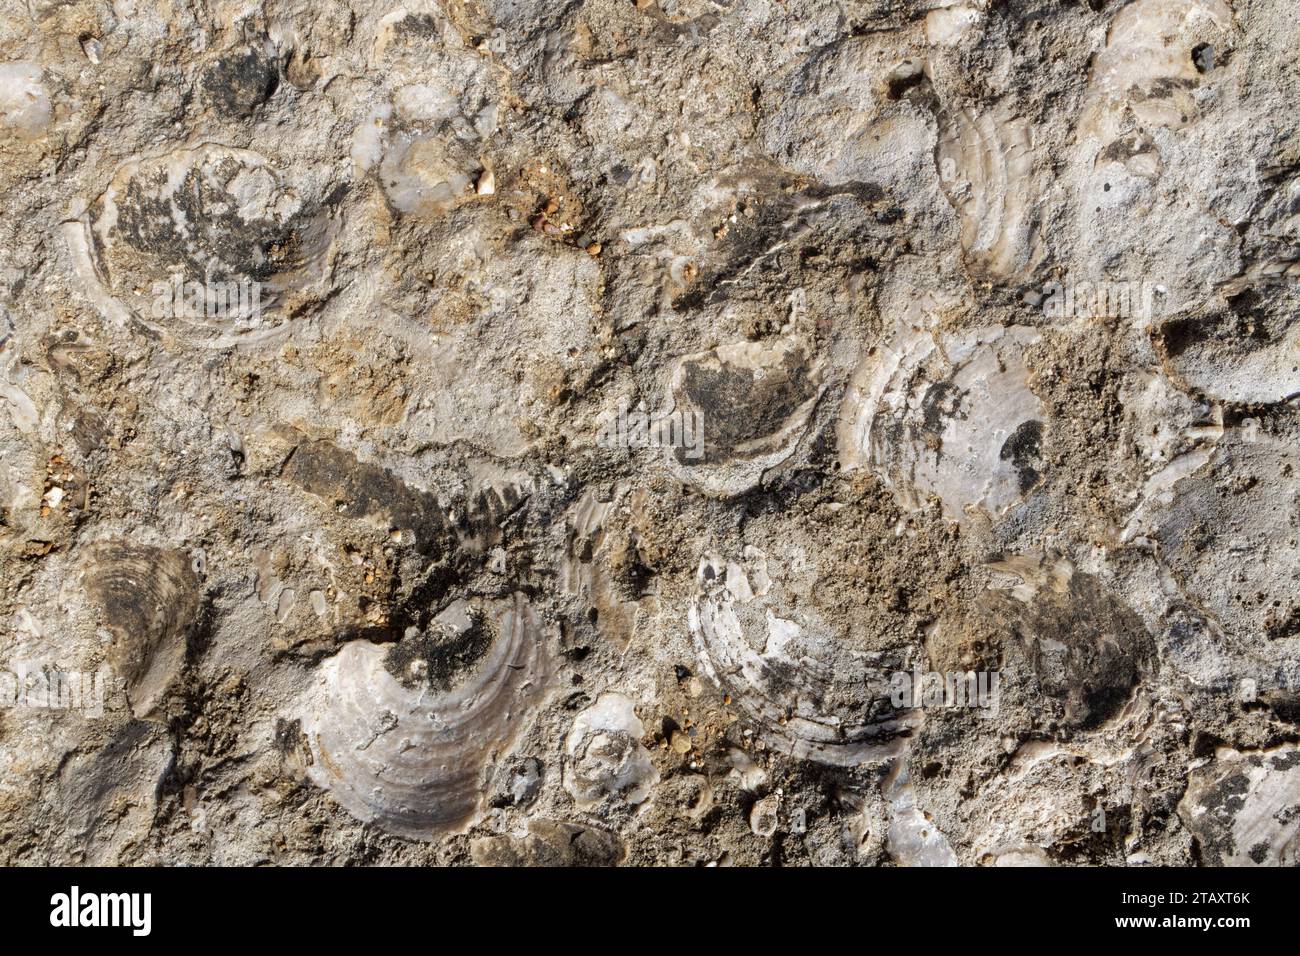 Gusci bivalvi giurassici fossilizzati, probabilmente del capesante (Camptonectes lamellosus) in calcare di Portland, esposti sulla riva del mare a Portland Bill Foto Stock